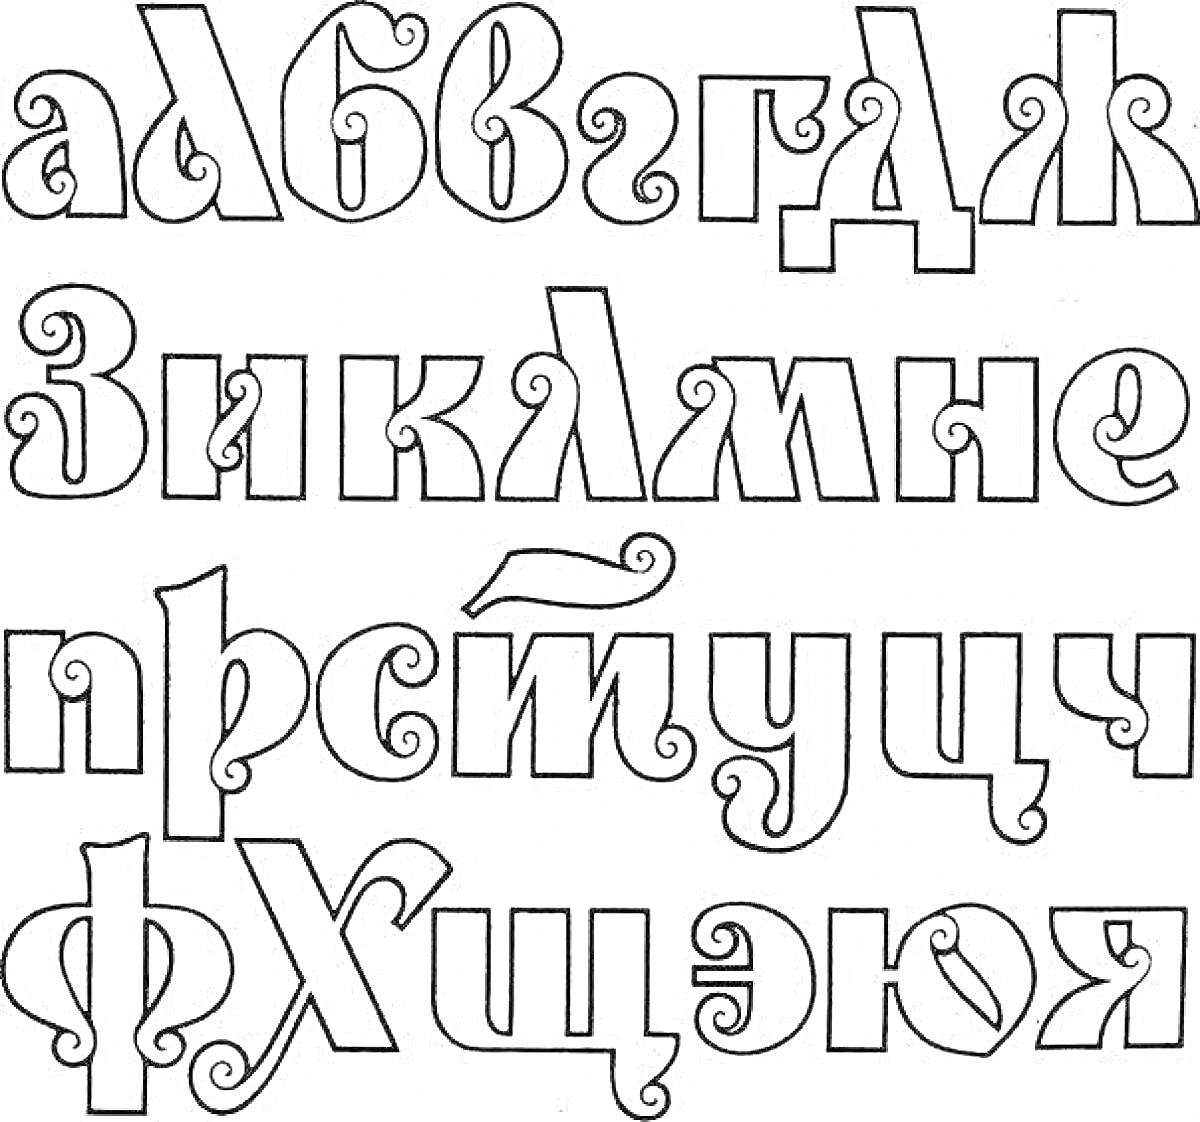 Раскраска Алфавит на русском языке с декоративными элементами